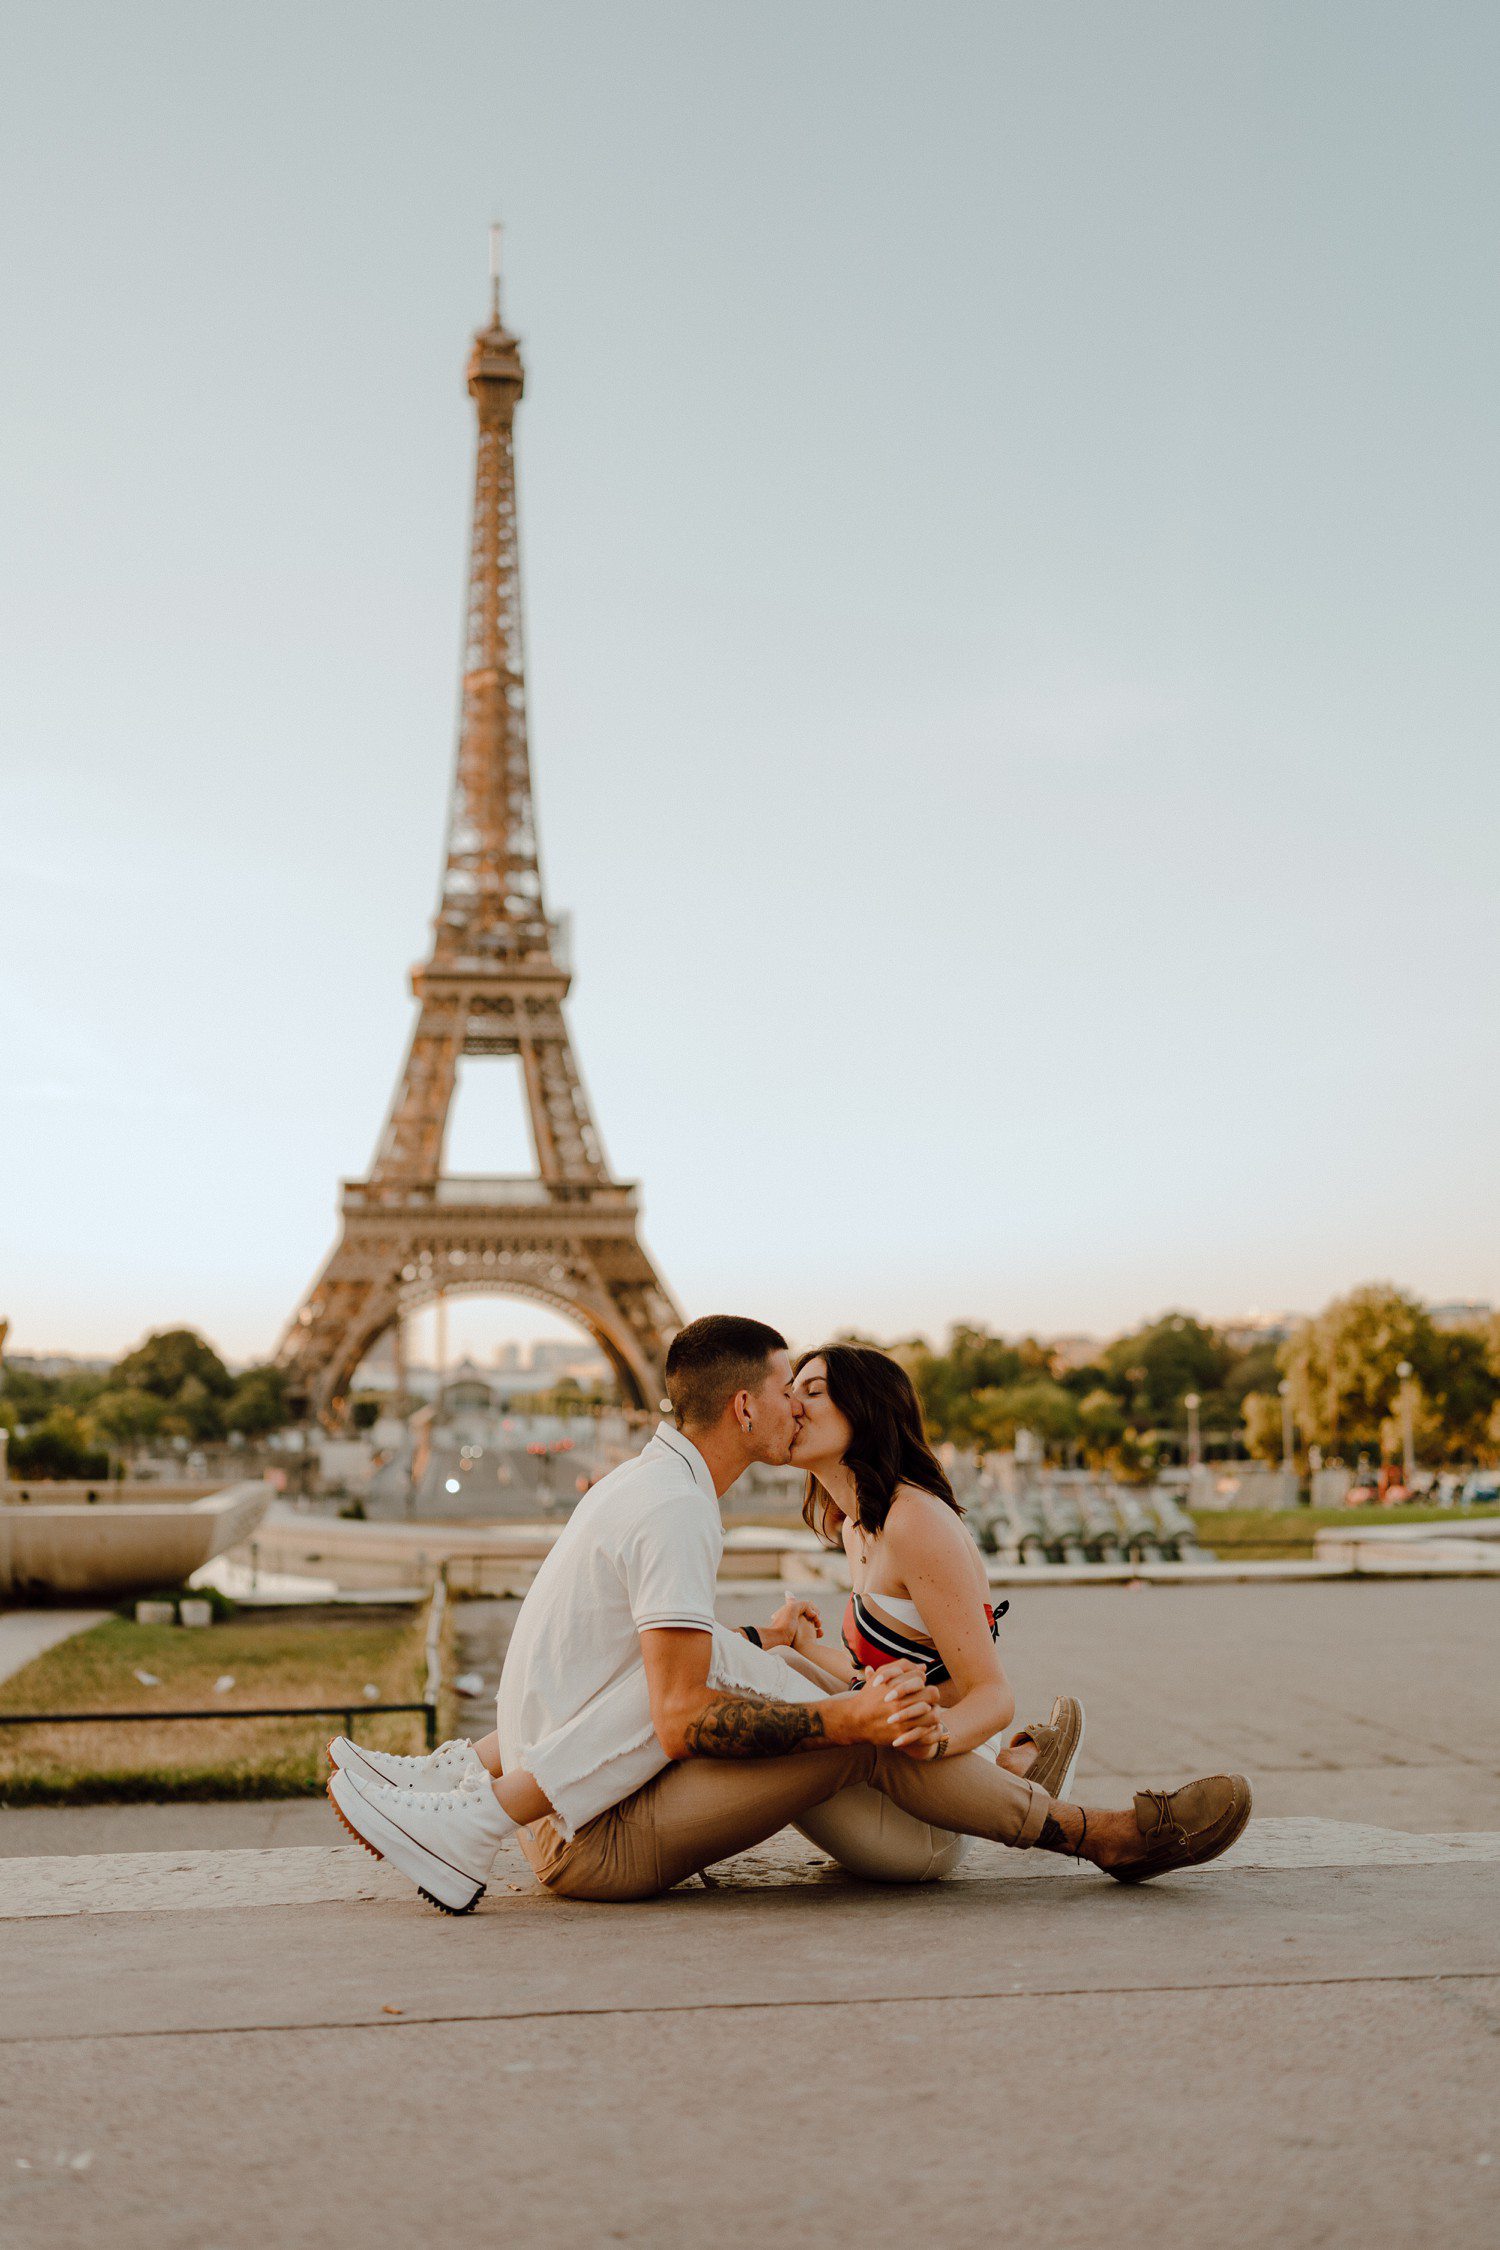 The Eiffel Tower Couples Photos